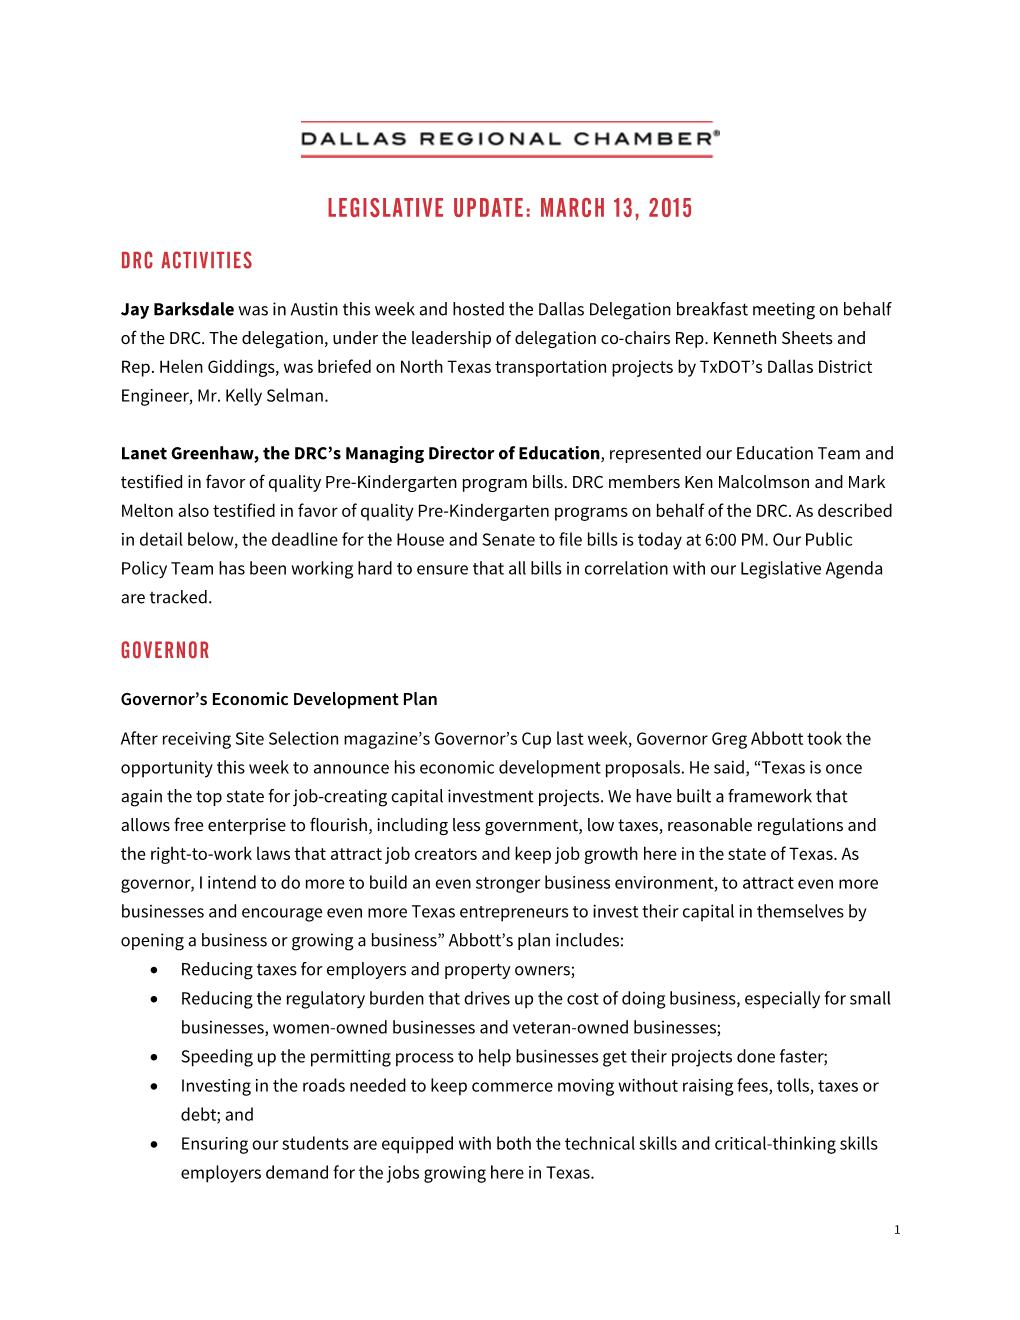 Legislative Update: March 13, 2015